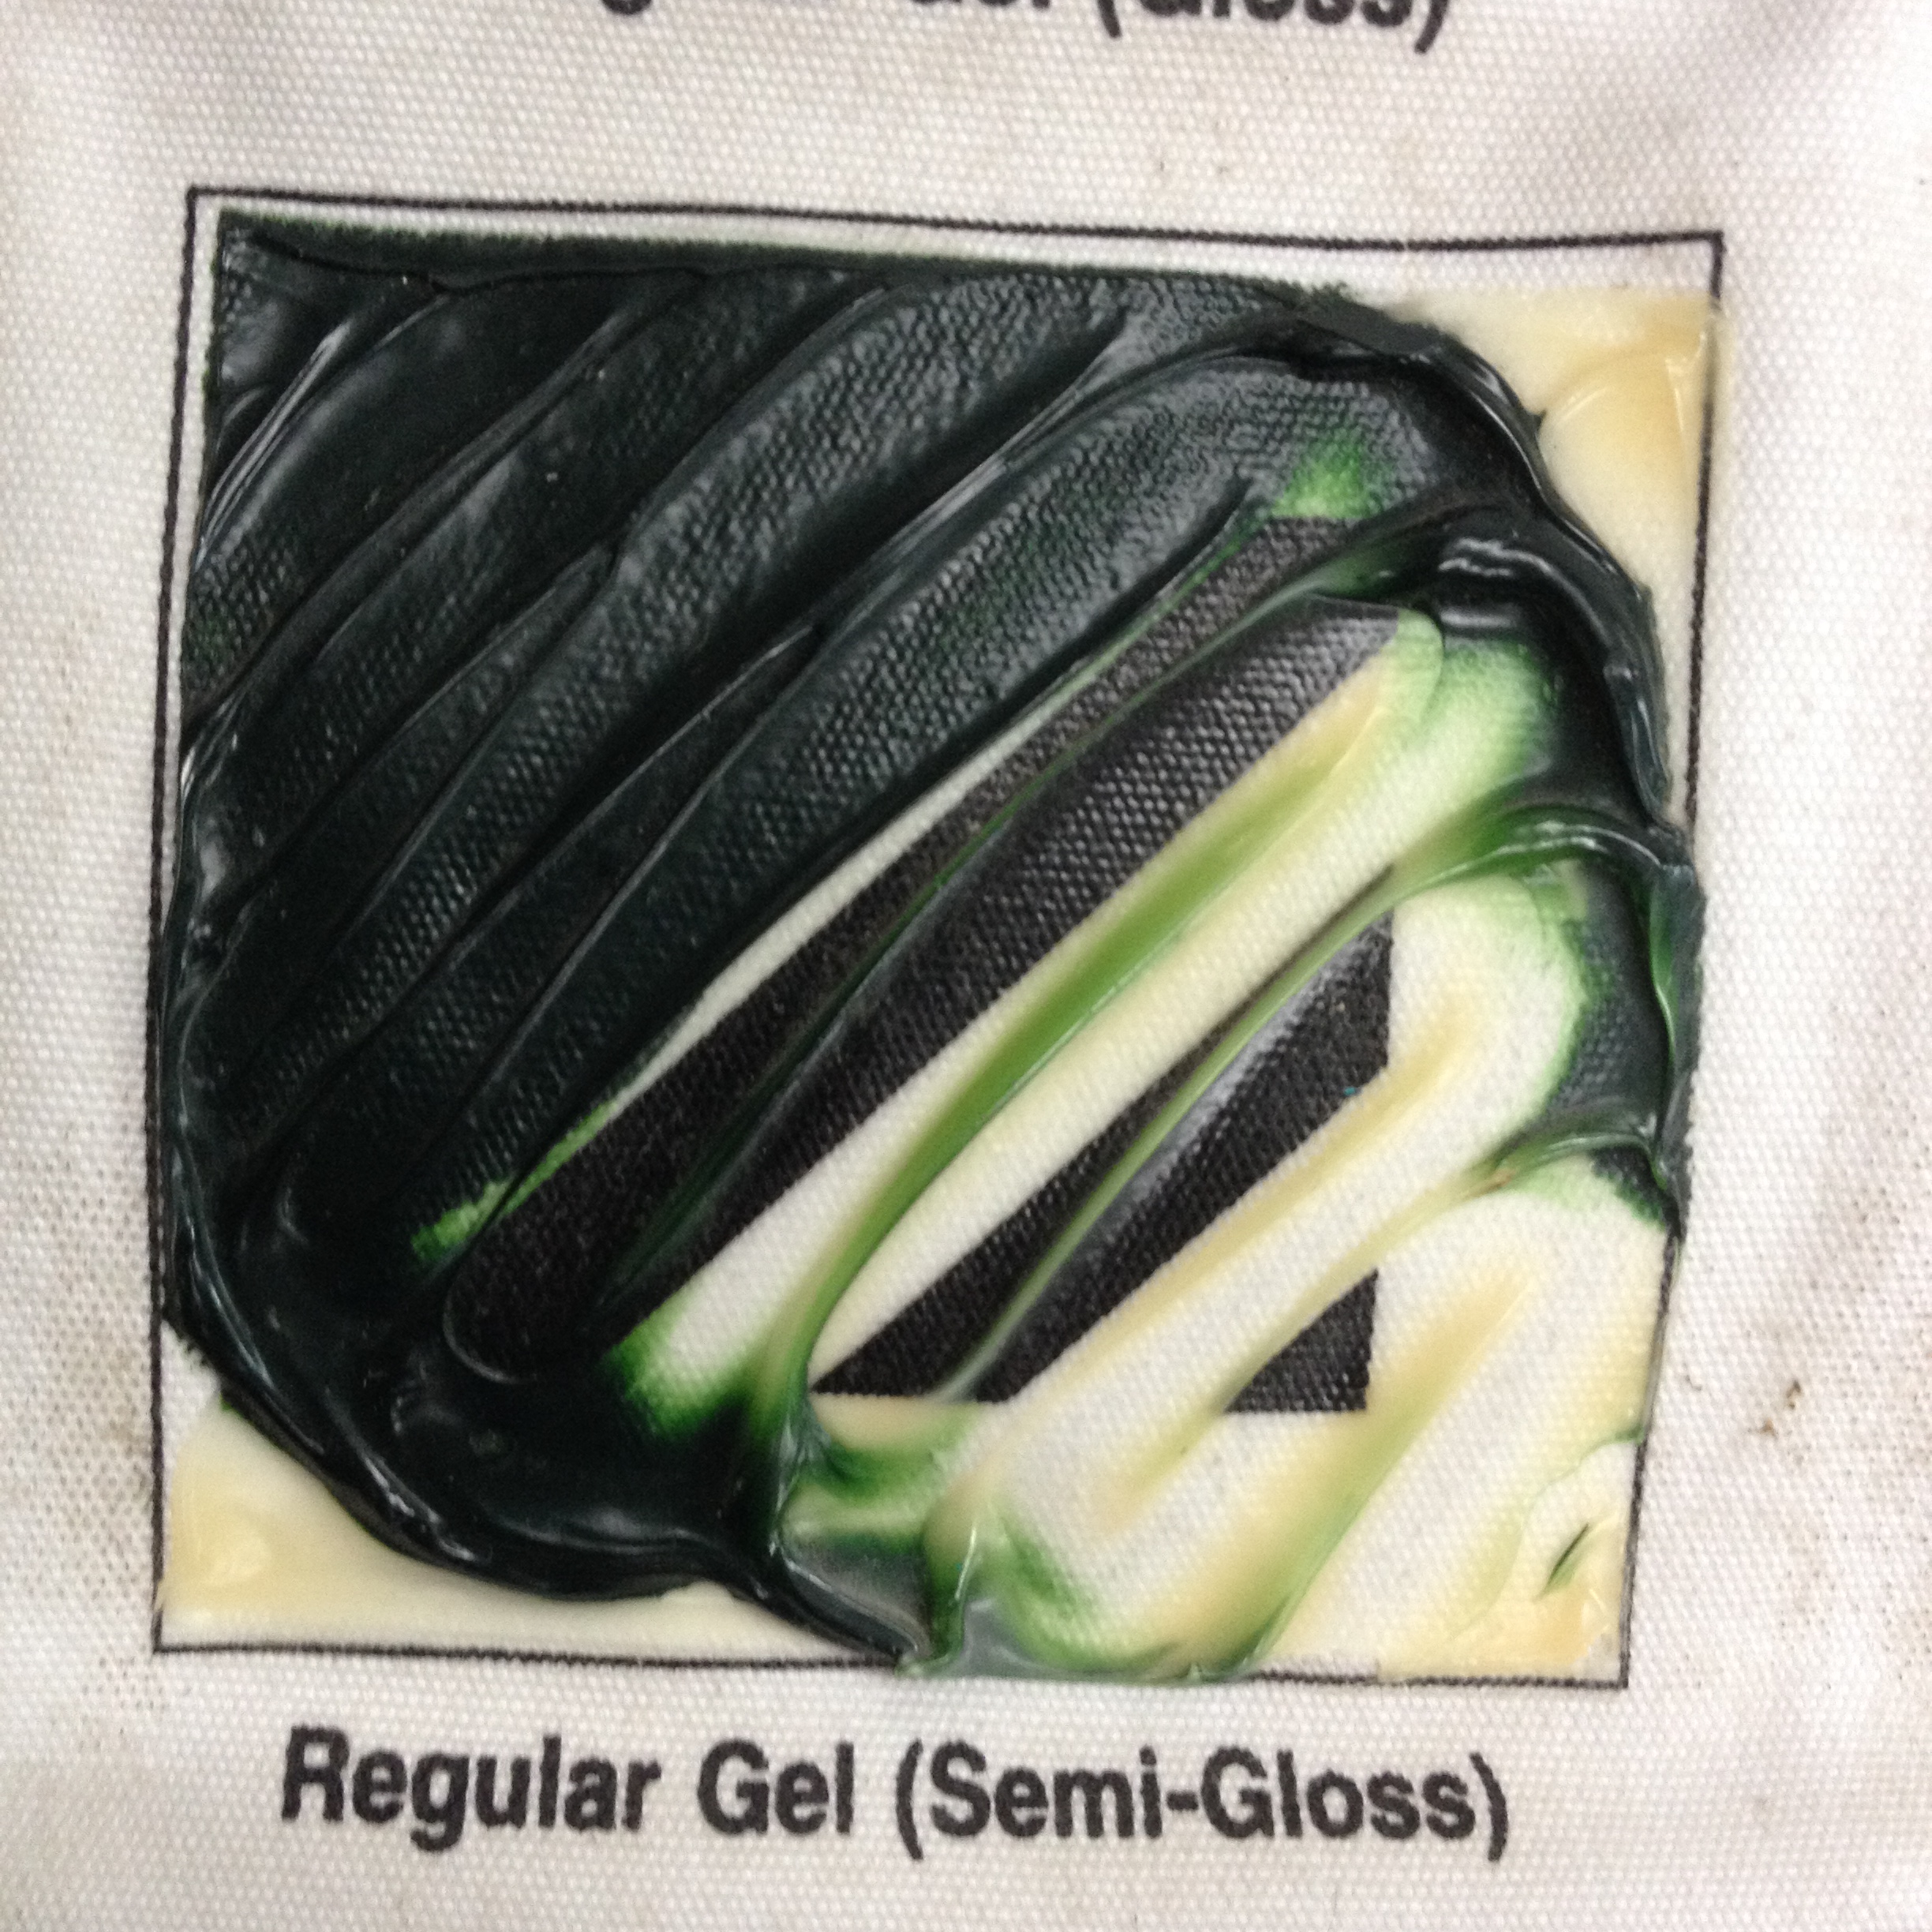 Regular Gel Semi-Gloss